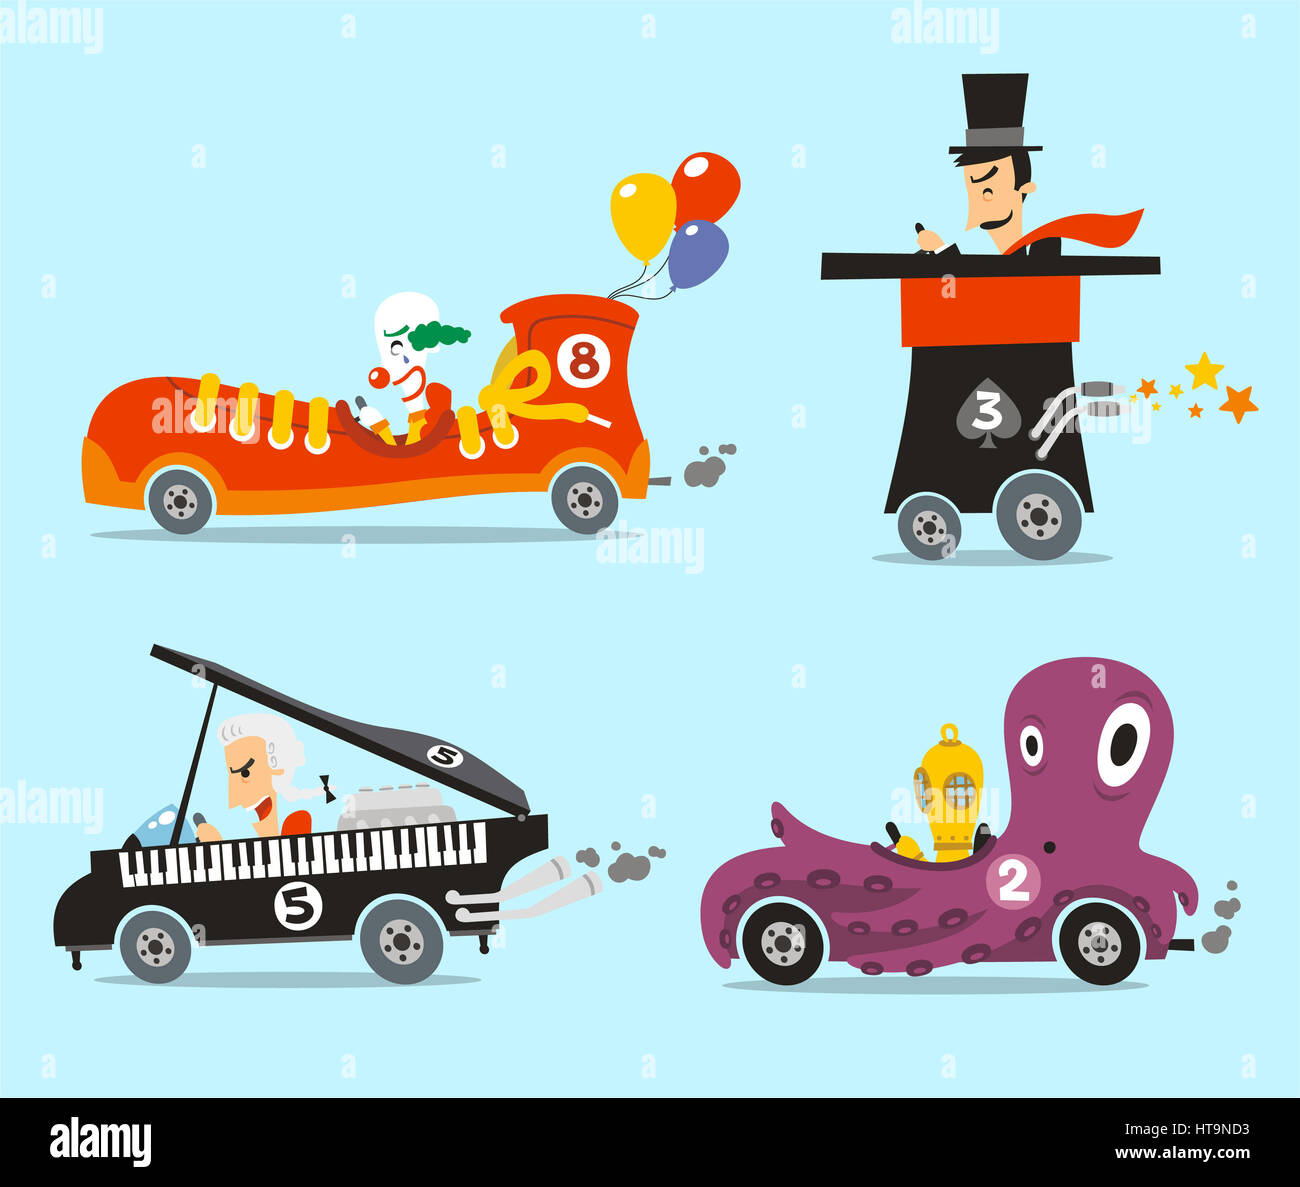 Verrückte Autos Vektor-Illustration-Cartoon-Satz mit vier verschiedenen fremden Autos wie, kichern Auto, Zylinderhut Katze, Klavier Auto und Oktopus Auto. Stockfoto